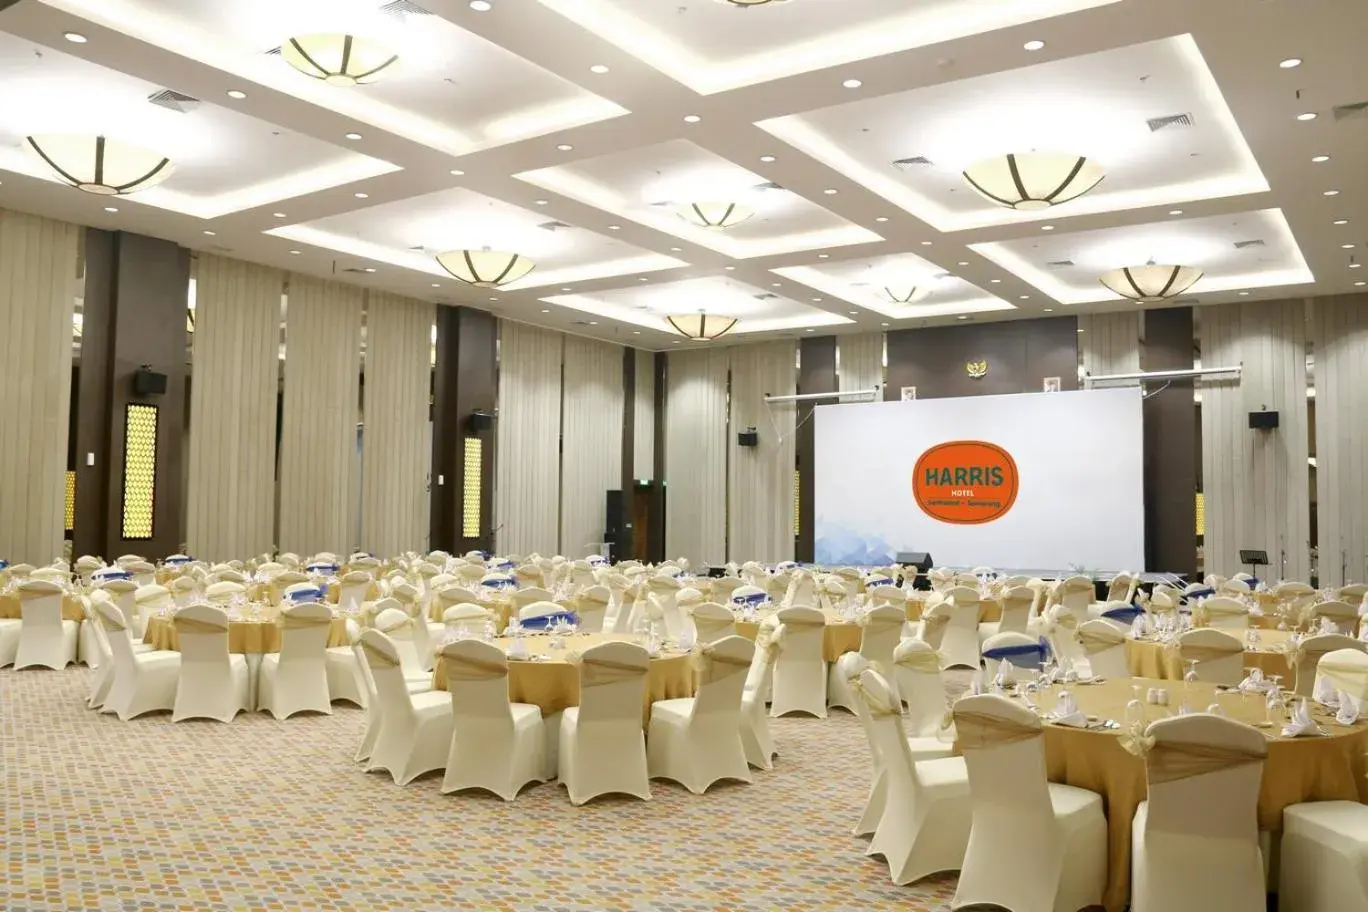 Banquet/Function facilities, Banquet Facilities in HARRIS Hotel Sentraland